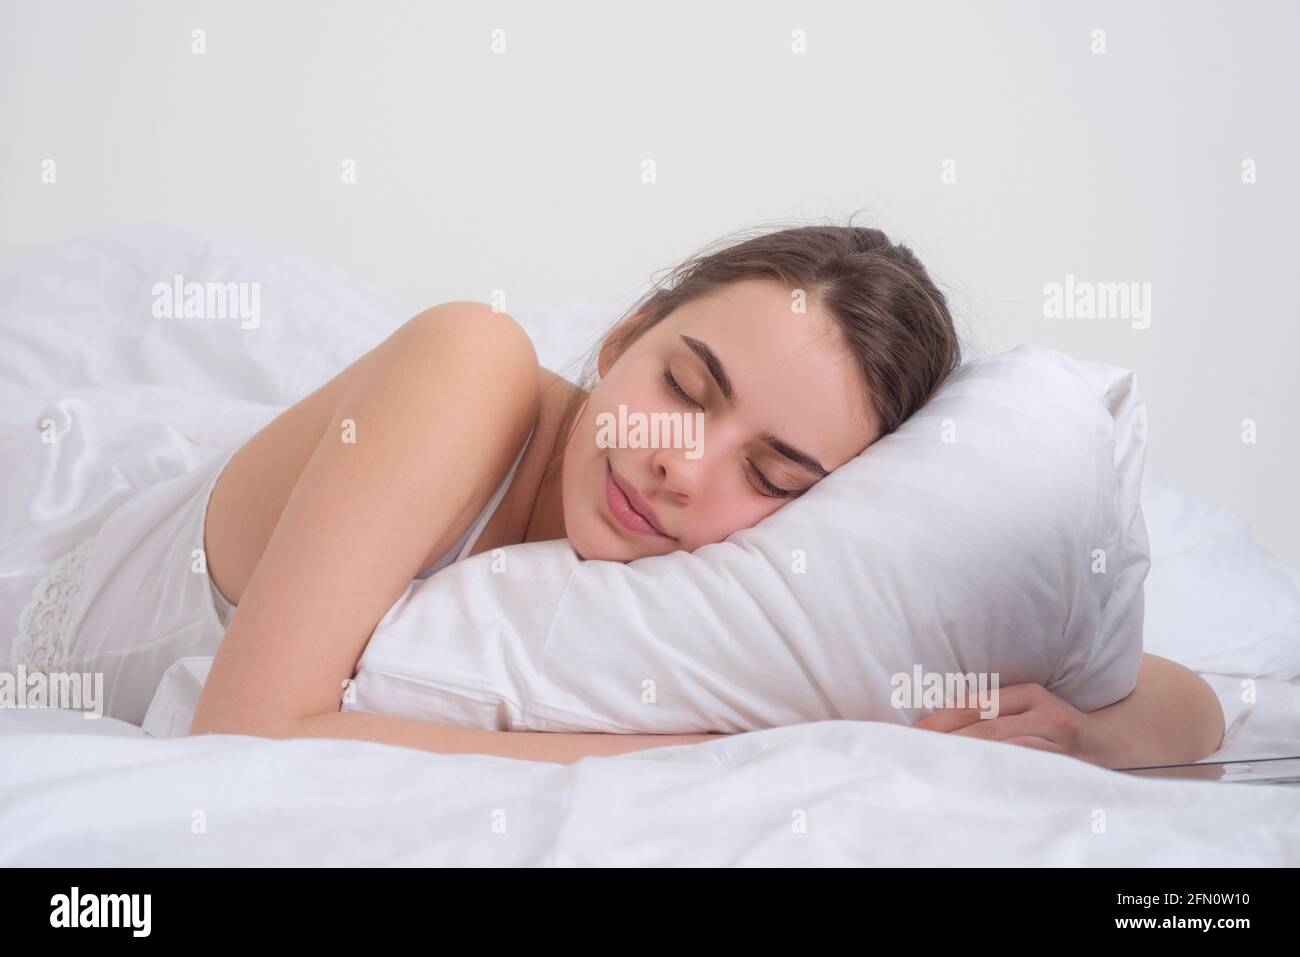 Junge Frau schläft gut im Bett und umarmt weiches weißes Kissen. Mädchen  ruht sich aus, guter Schlaf. Schlafende Frau. Schöne junge Frau liegt im  Bett und Stockfotografie - Alamy